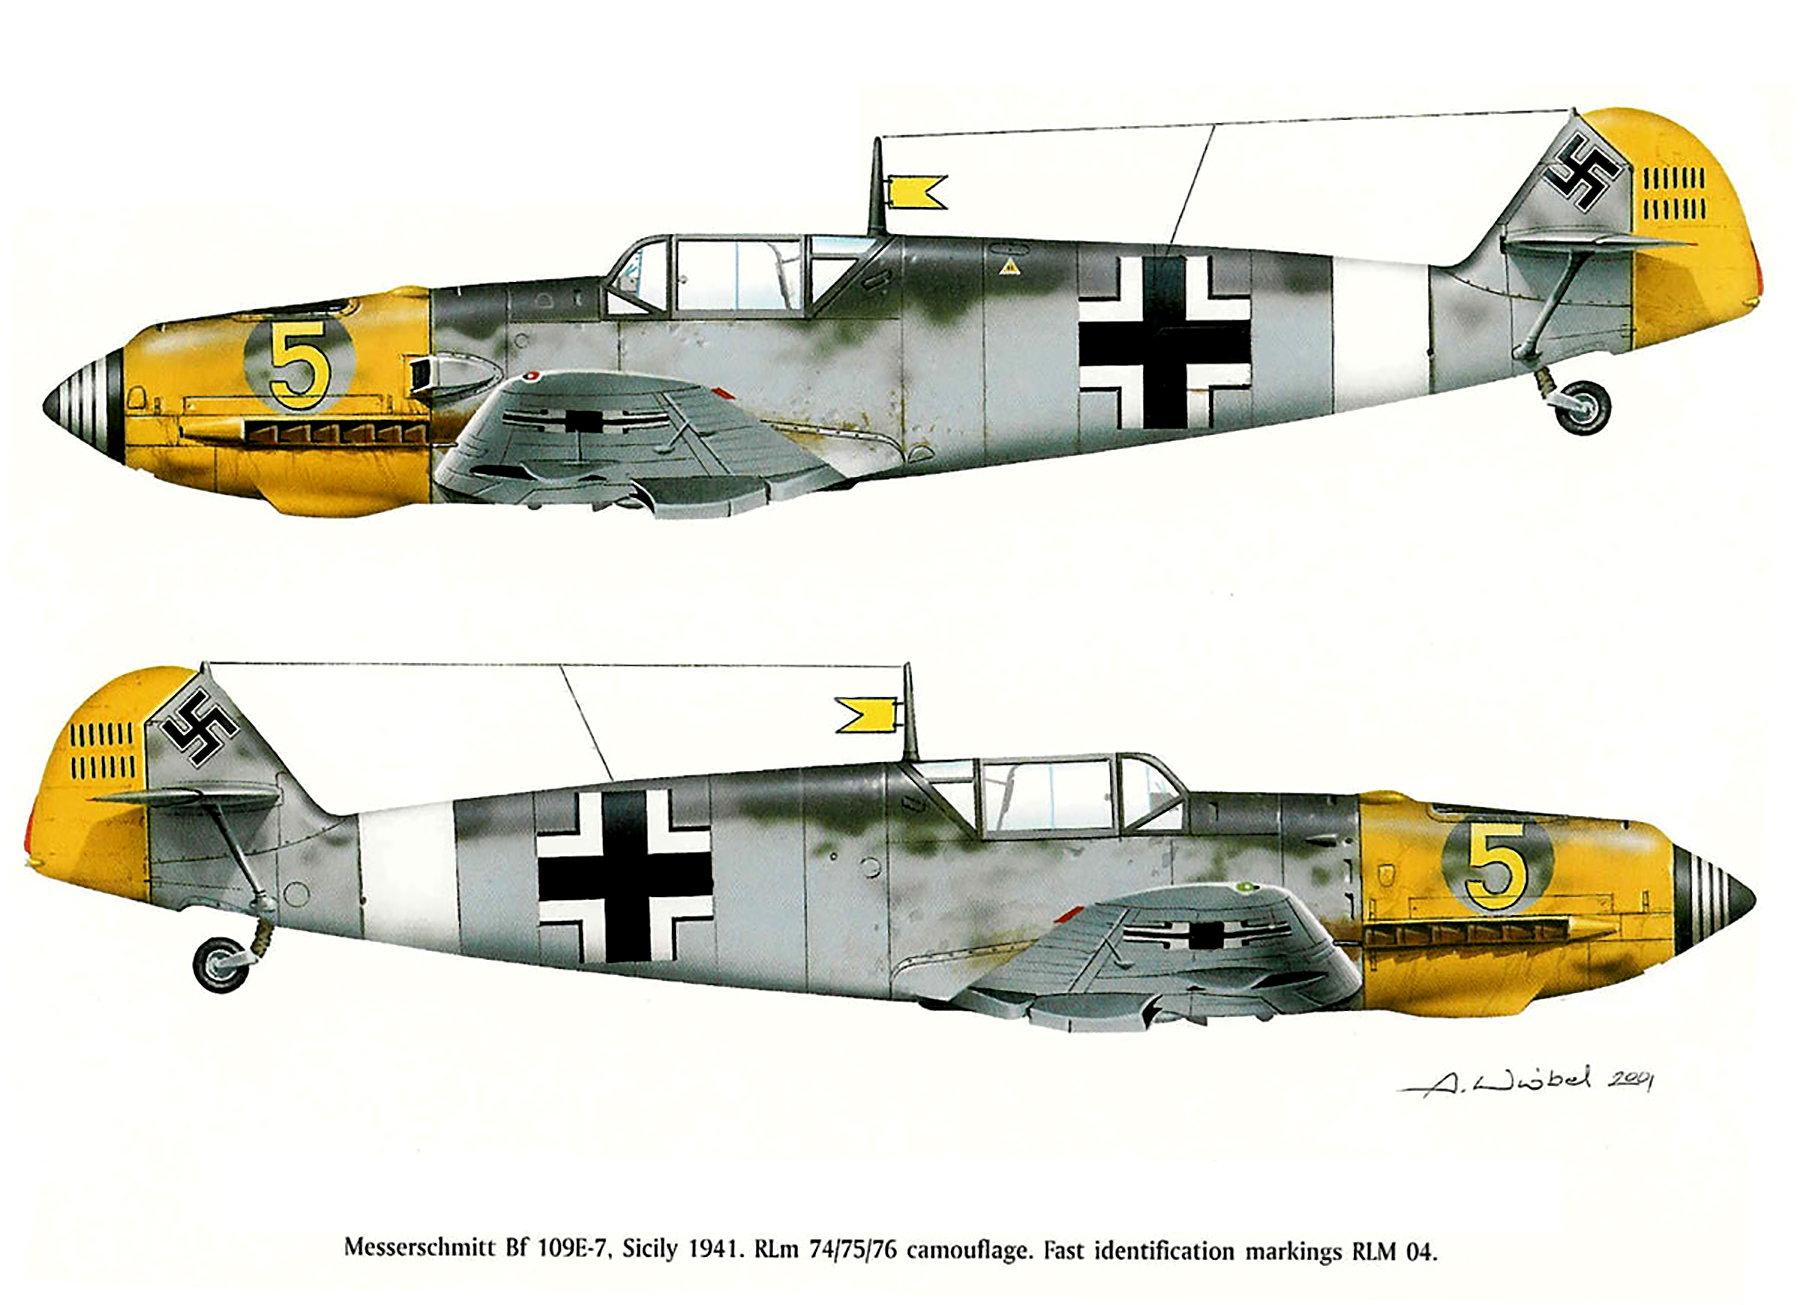 Messerschmitt-Bf-109E7-9.JG27-Yellow-5-Erbo-Graf-von-Kageneck-WNr-4187-Balkans-May-1941-0C (1).jpg